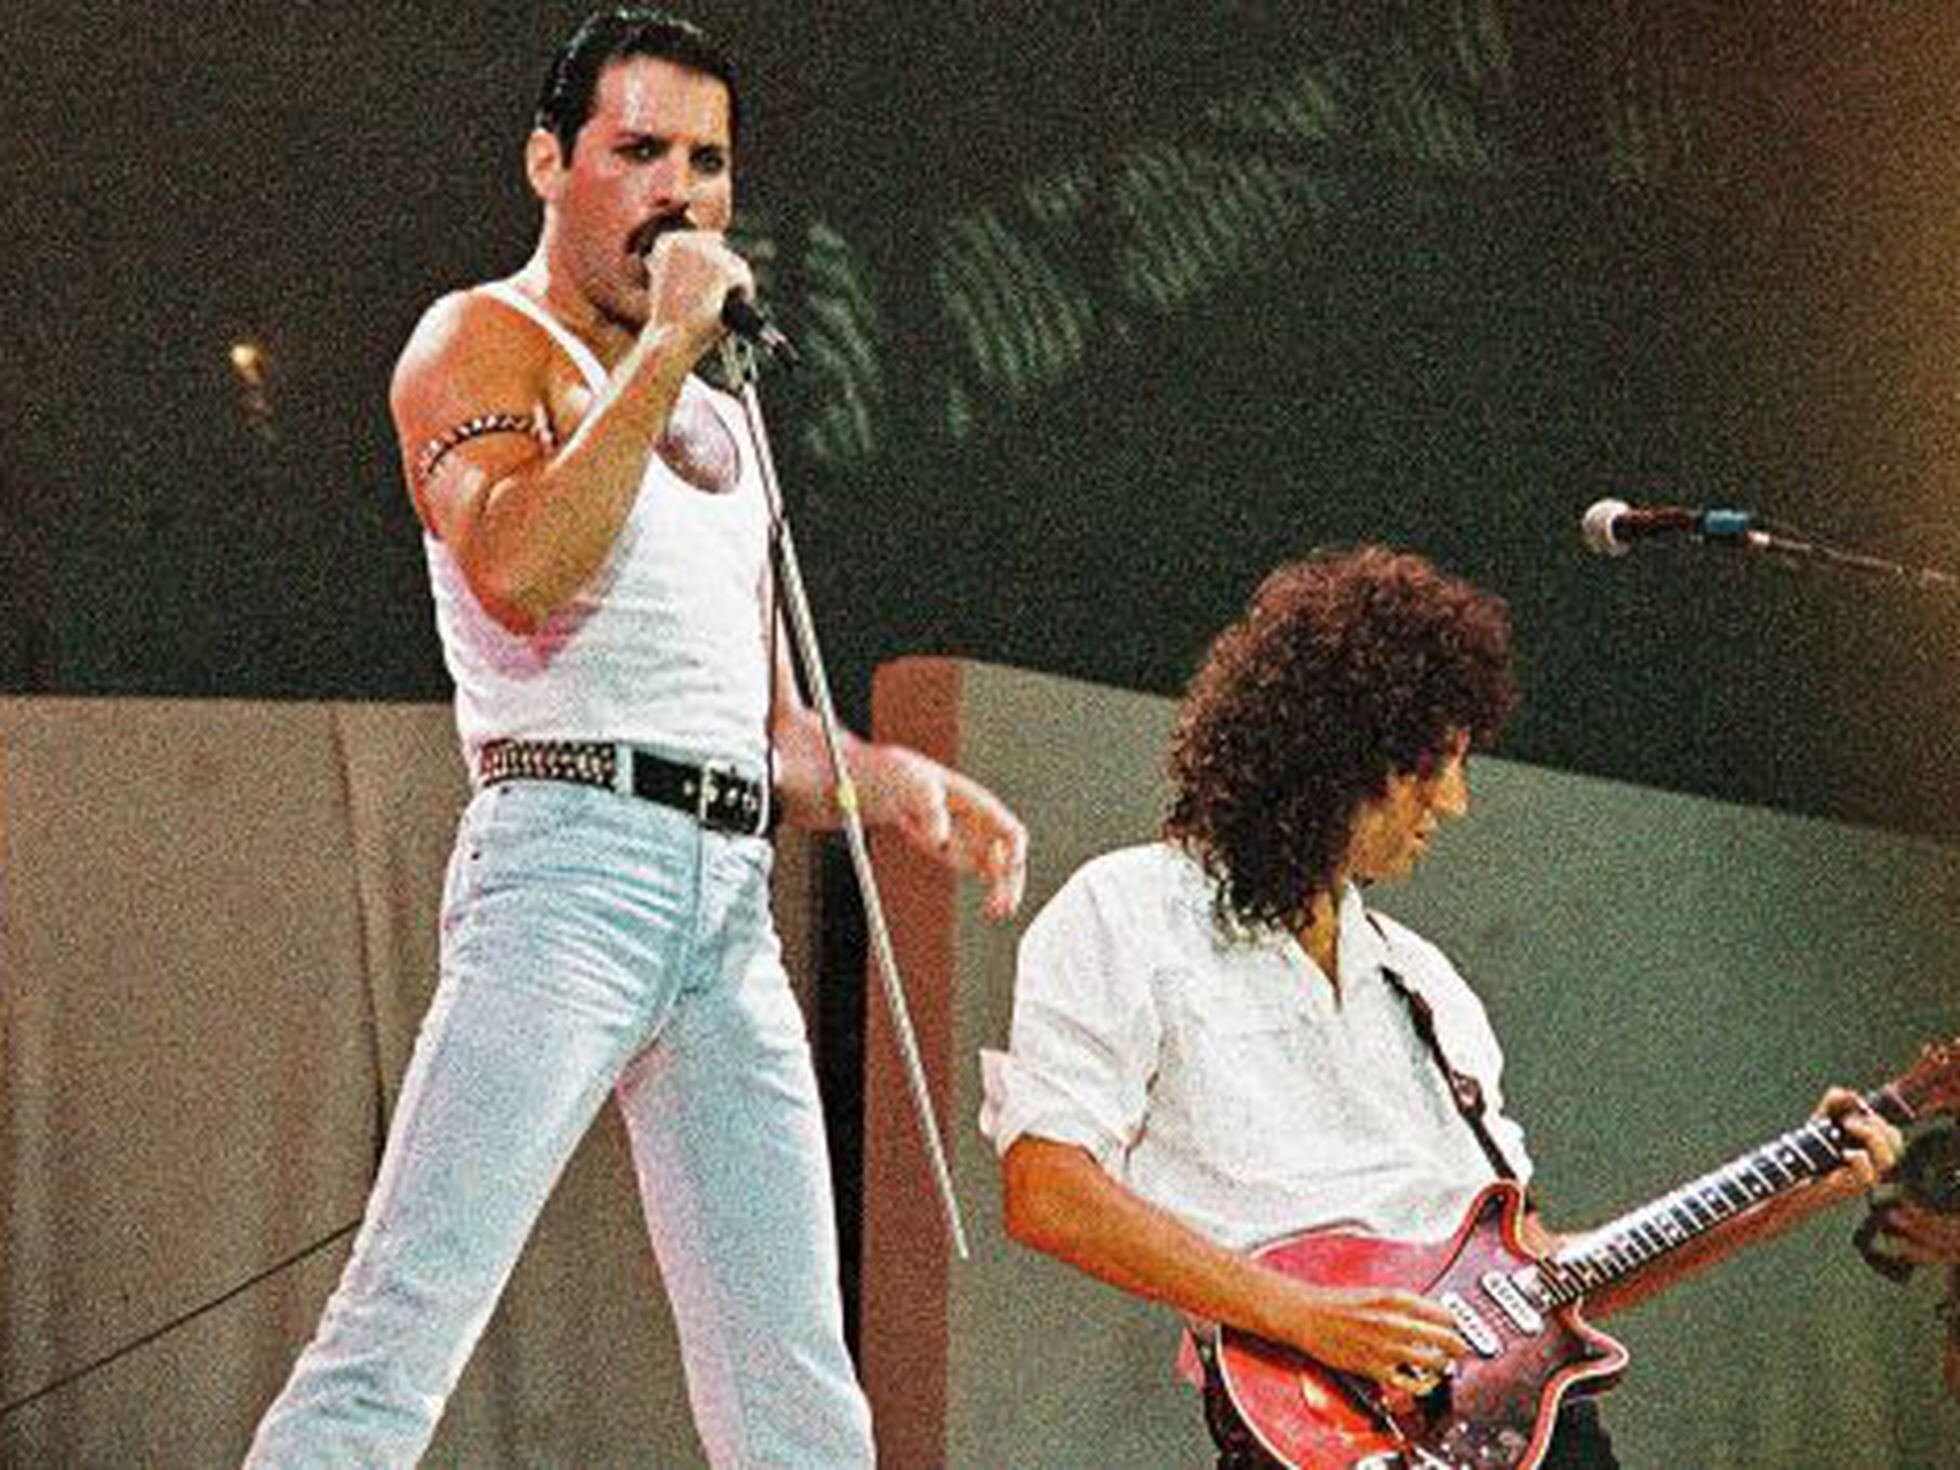 Manifiesto Fugaz Relación Queen Live Aid: Los 20 minutos que cambiaron la historia del rock | ICON |  EL PAÍS